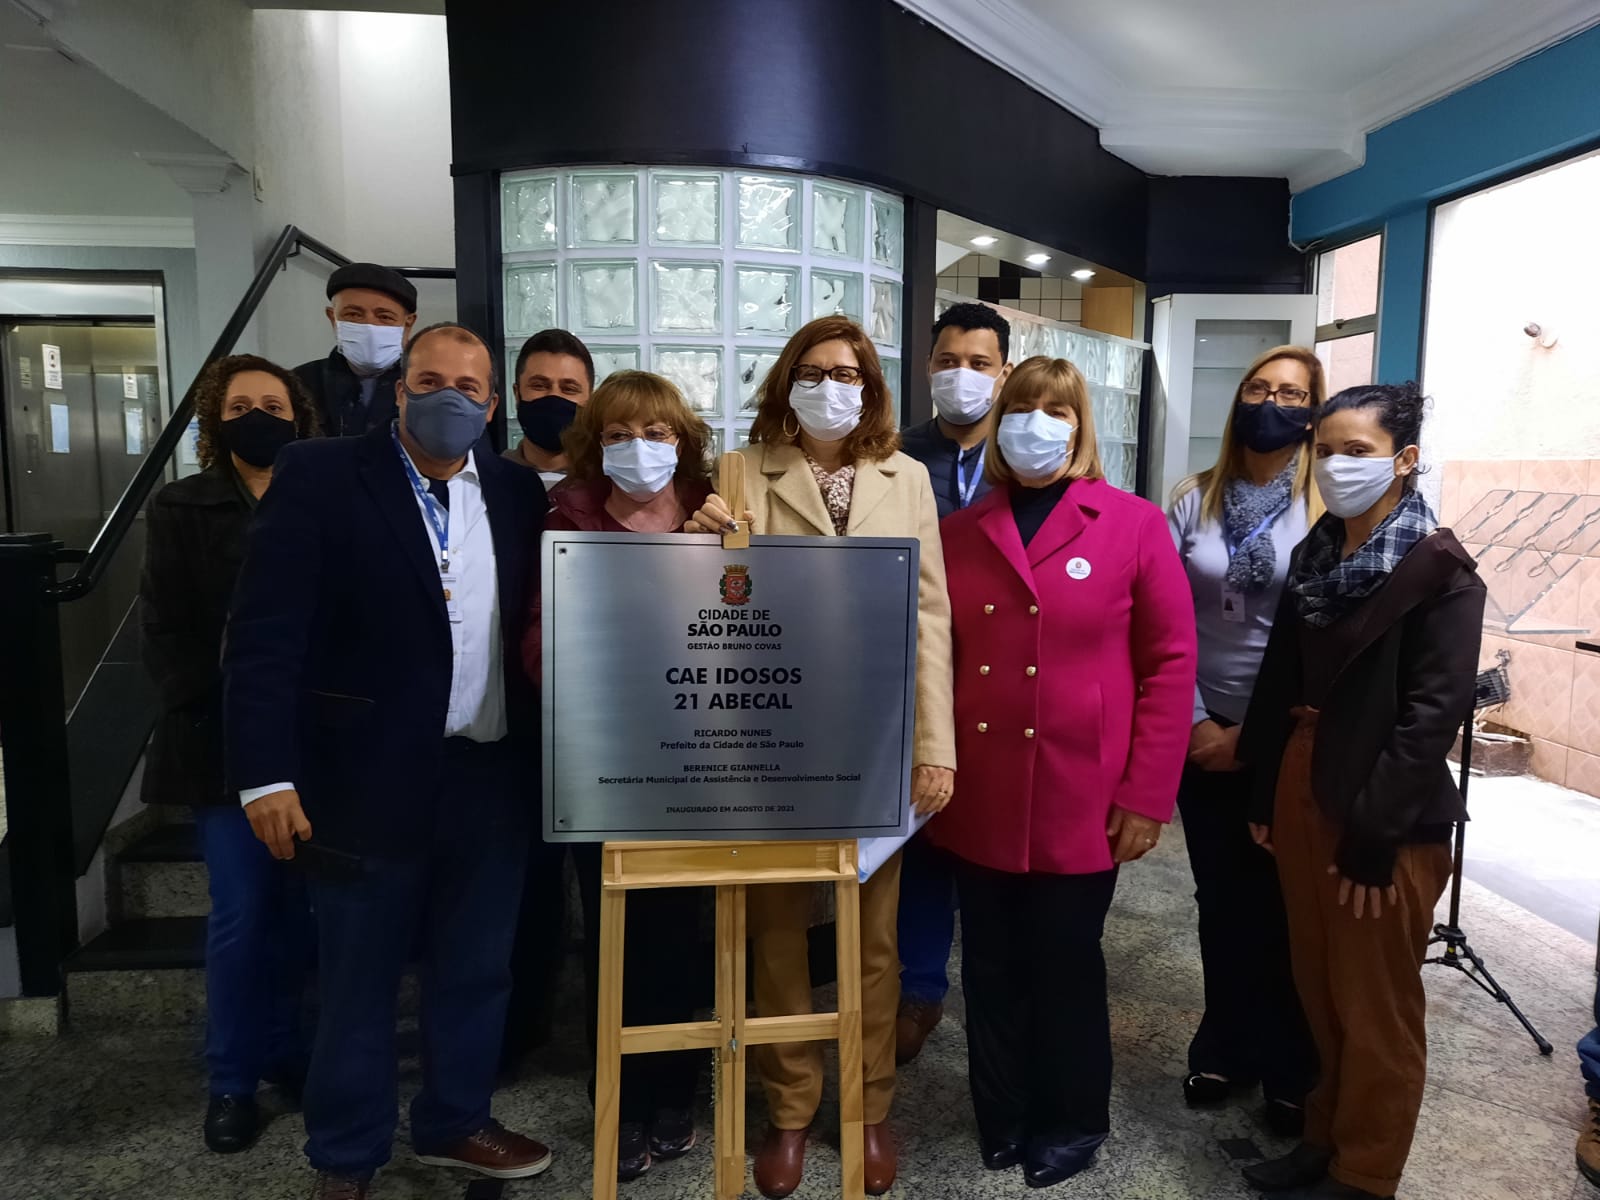 Dez pessoas atrás de uma placa metálica que contém o logotipo da Cidade de São Paulo Assistência e Desenvolvimento Social Gestão Bruno Covas, Centro de Acolhida Especial para Idosos 21 Abecal.